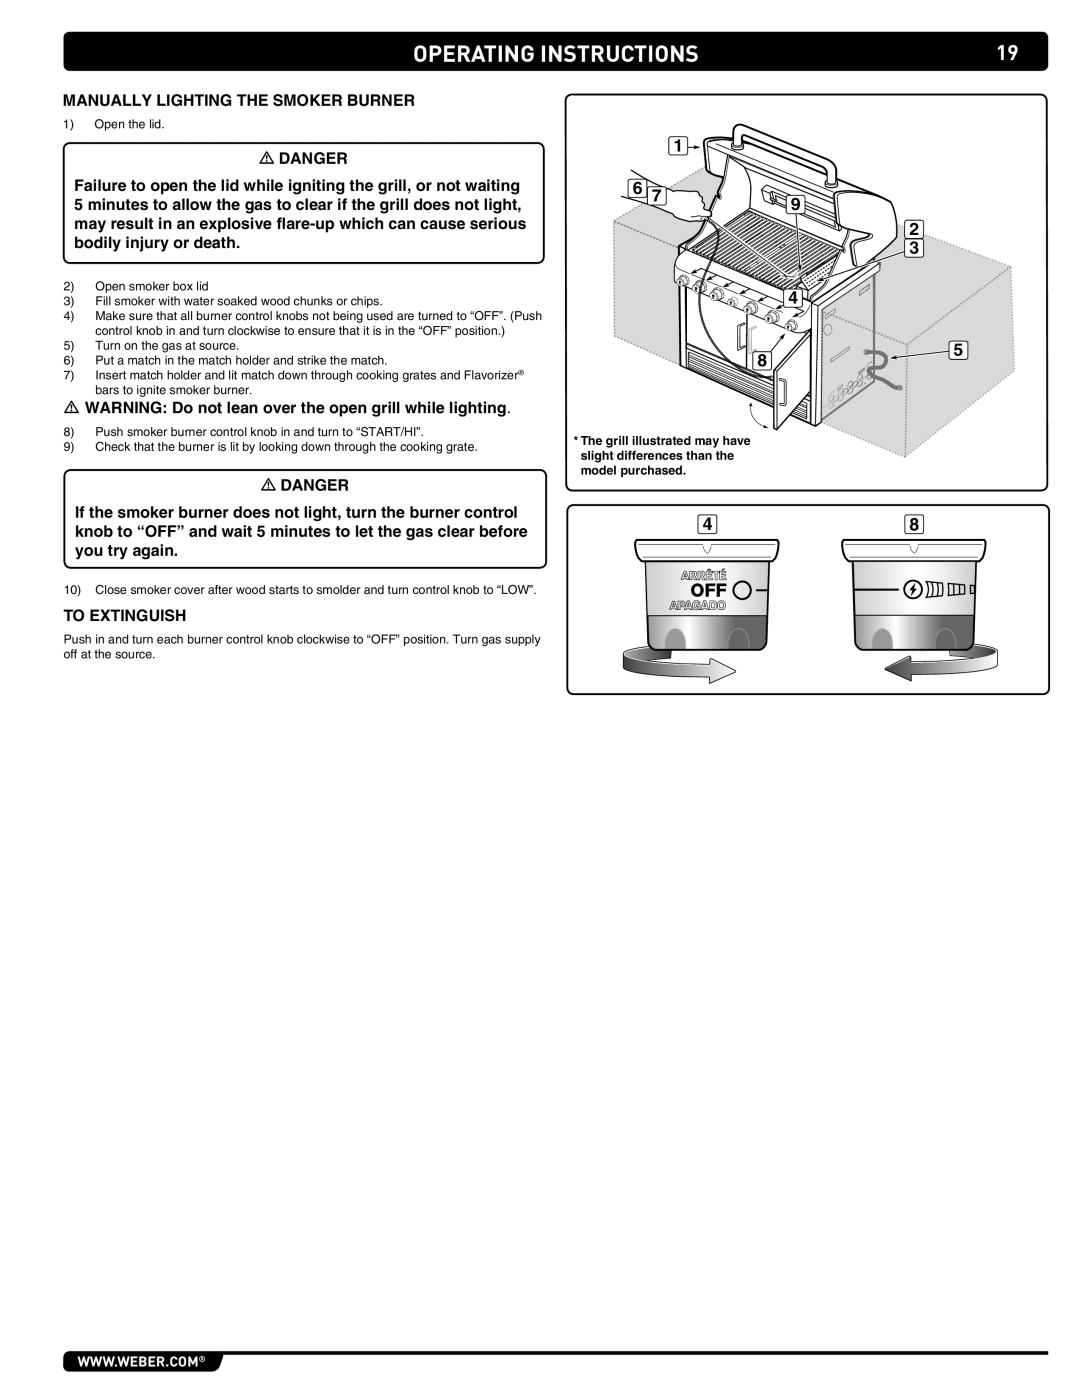 Weber S-460 manual operating Instructions, Manually Lighting the Smoker Burner, m DANGER, mDANGER 